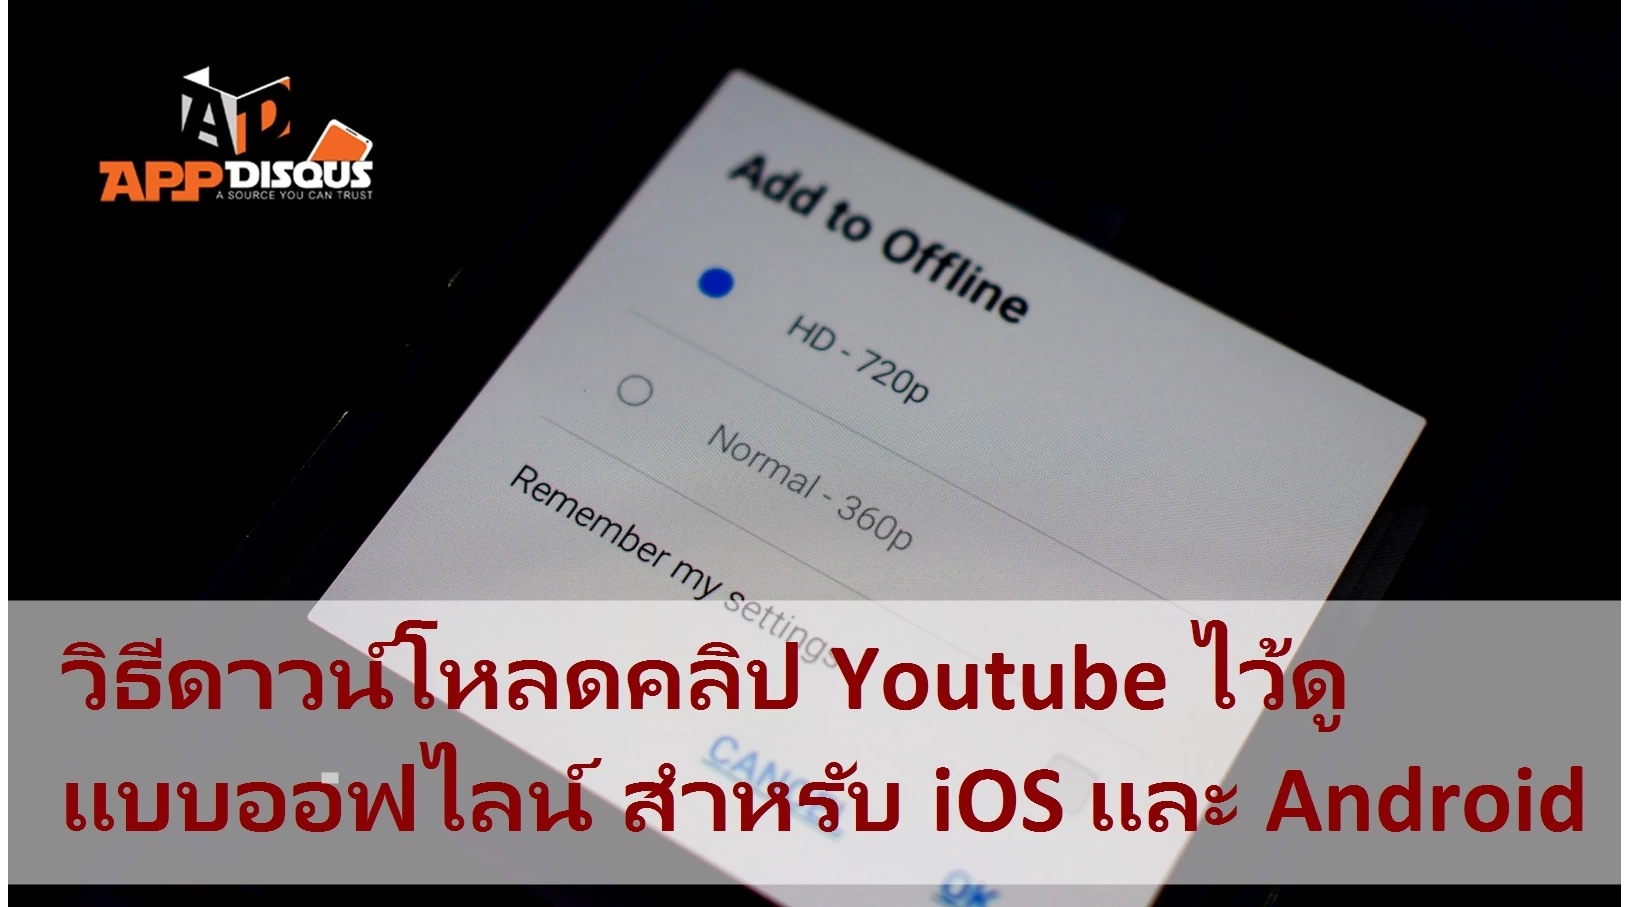 youtube | youtube | [Tips] วิธีดาวน์โหลดคลิป Youtube ไว้ดูแบบออฟไลน์ ฟีเจอร์ใหม่เอี่ยมจาก Youtube สำหรับ iOS และ Android